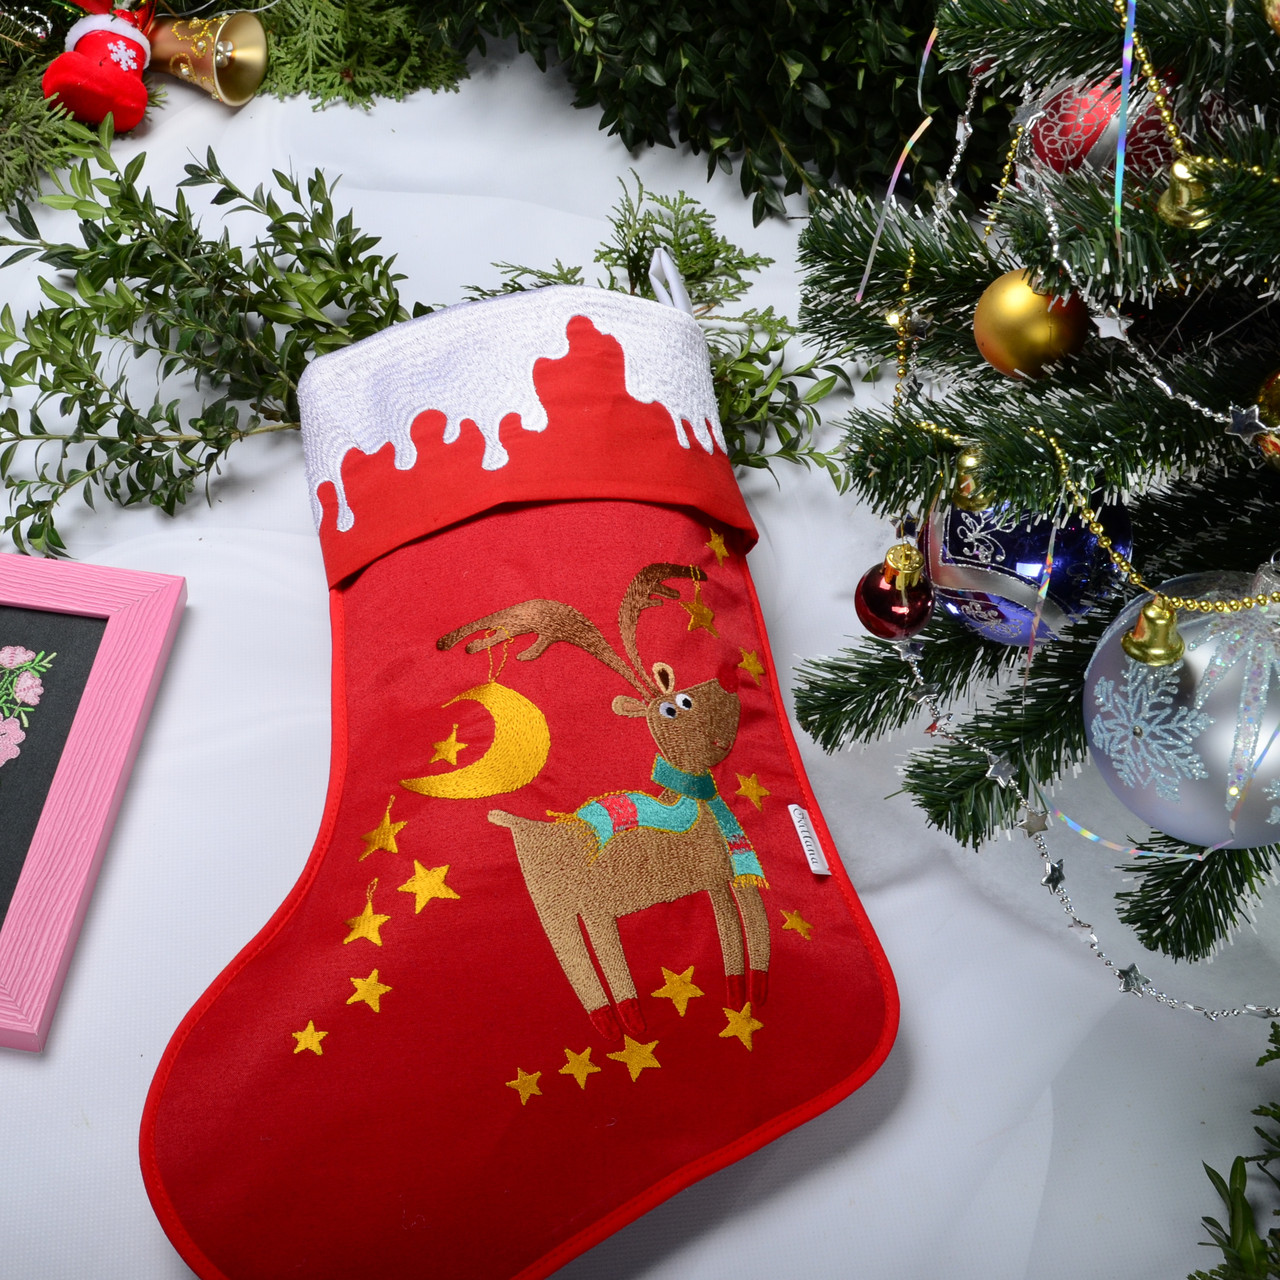 Новорічний подарунковий чобіток, Різдв"яний носок, з вишивкою, червоного кольору, вишивка — олень і зірки.